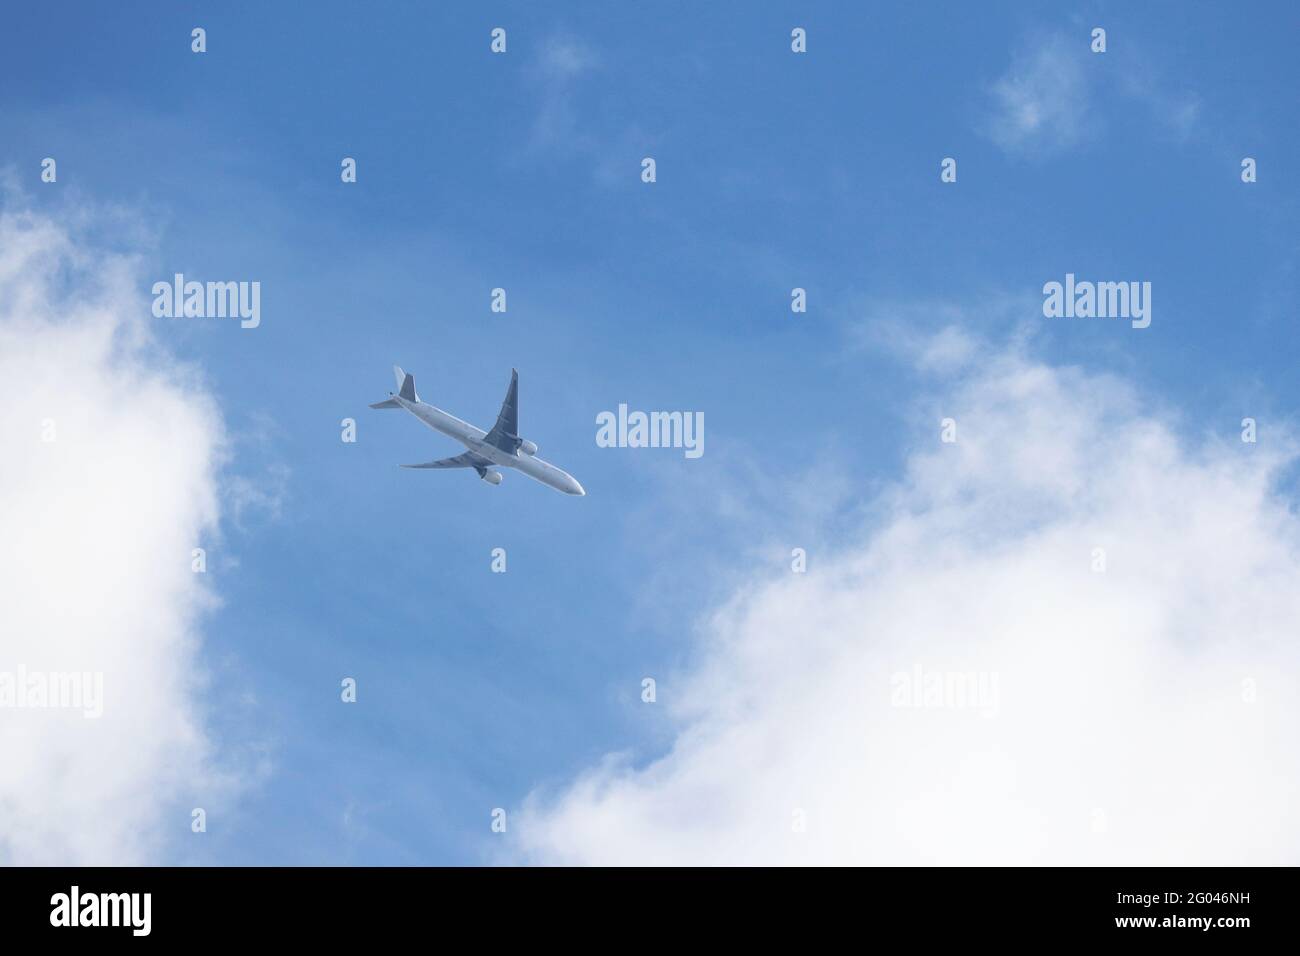 Avion volant dans un ciel bleu sur fond de nuages blancs. Concept d'avion commercial à deux moteurs, de turbulence et de déplacement Banque D'Images